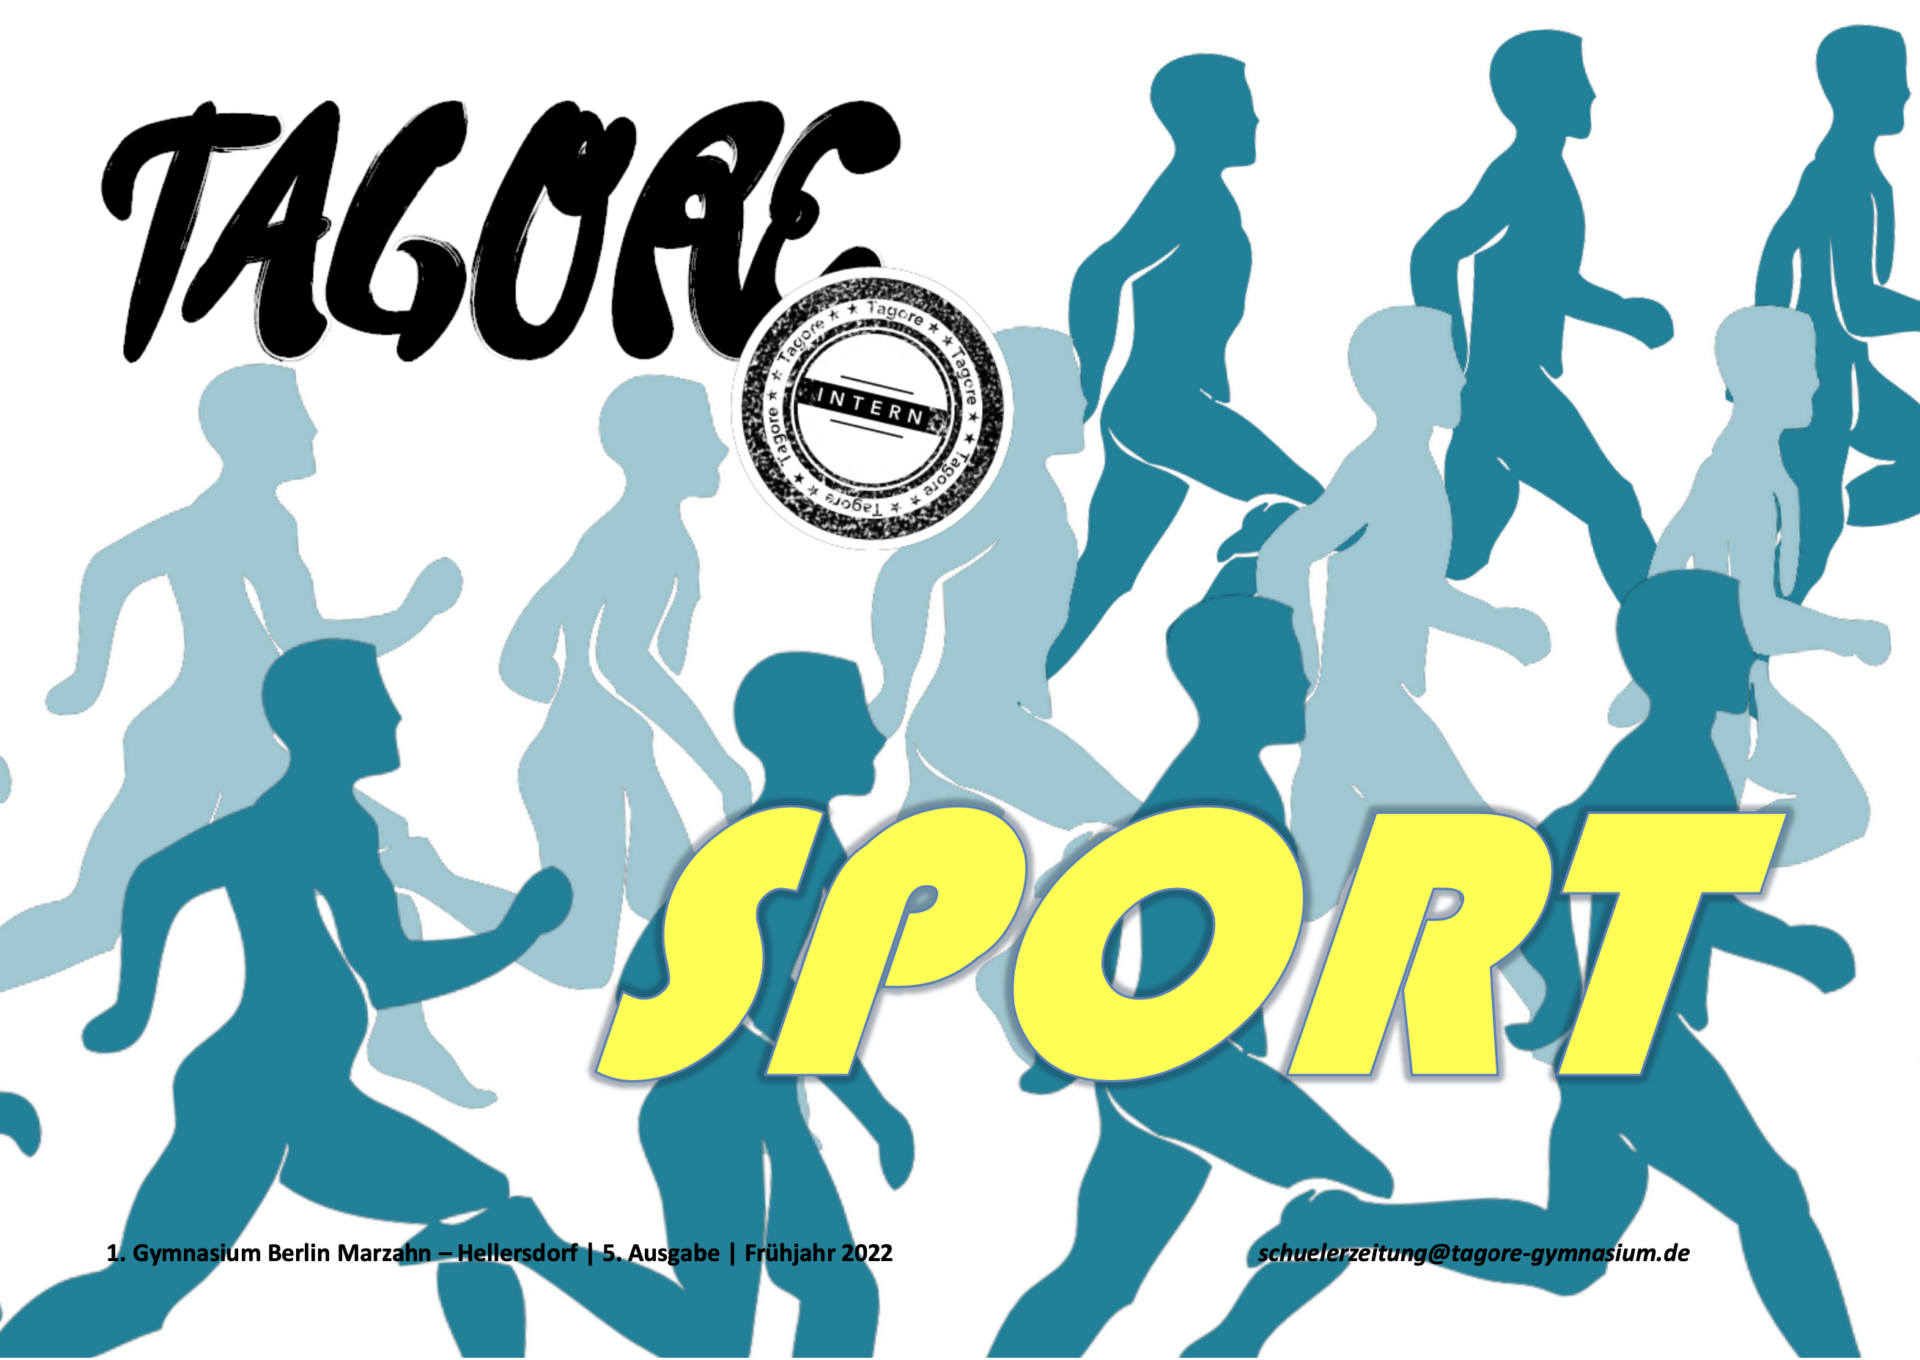 TAGORE.intern: Schülerzeitung Mai 2022 "Sport"